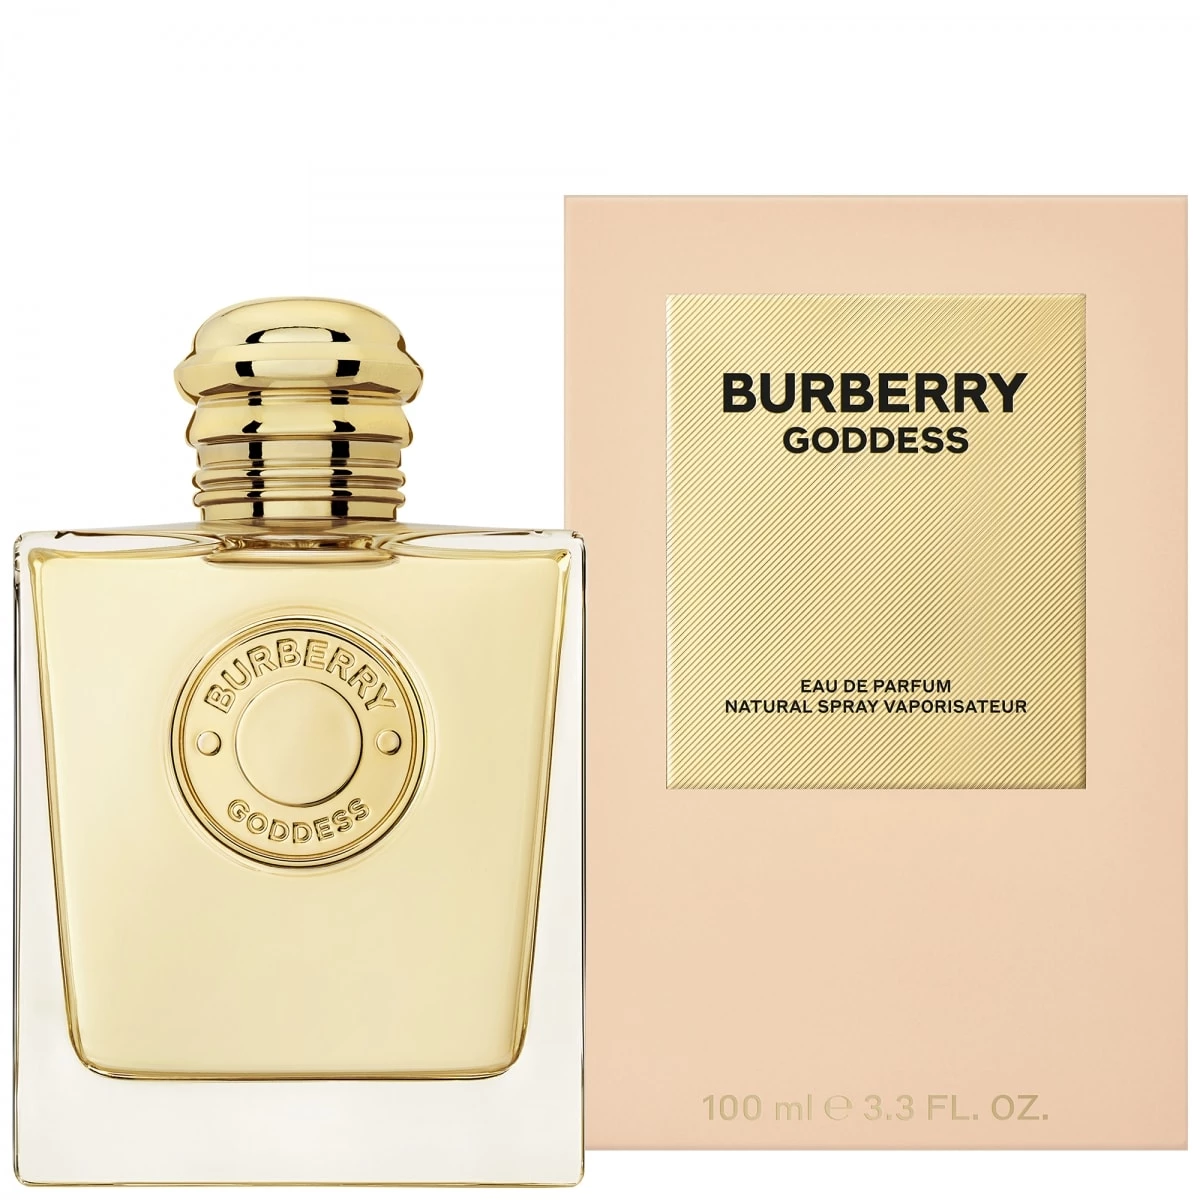 Burberry Goddess Eau De Parfum Incenza